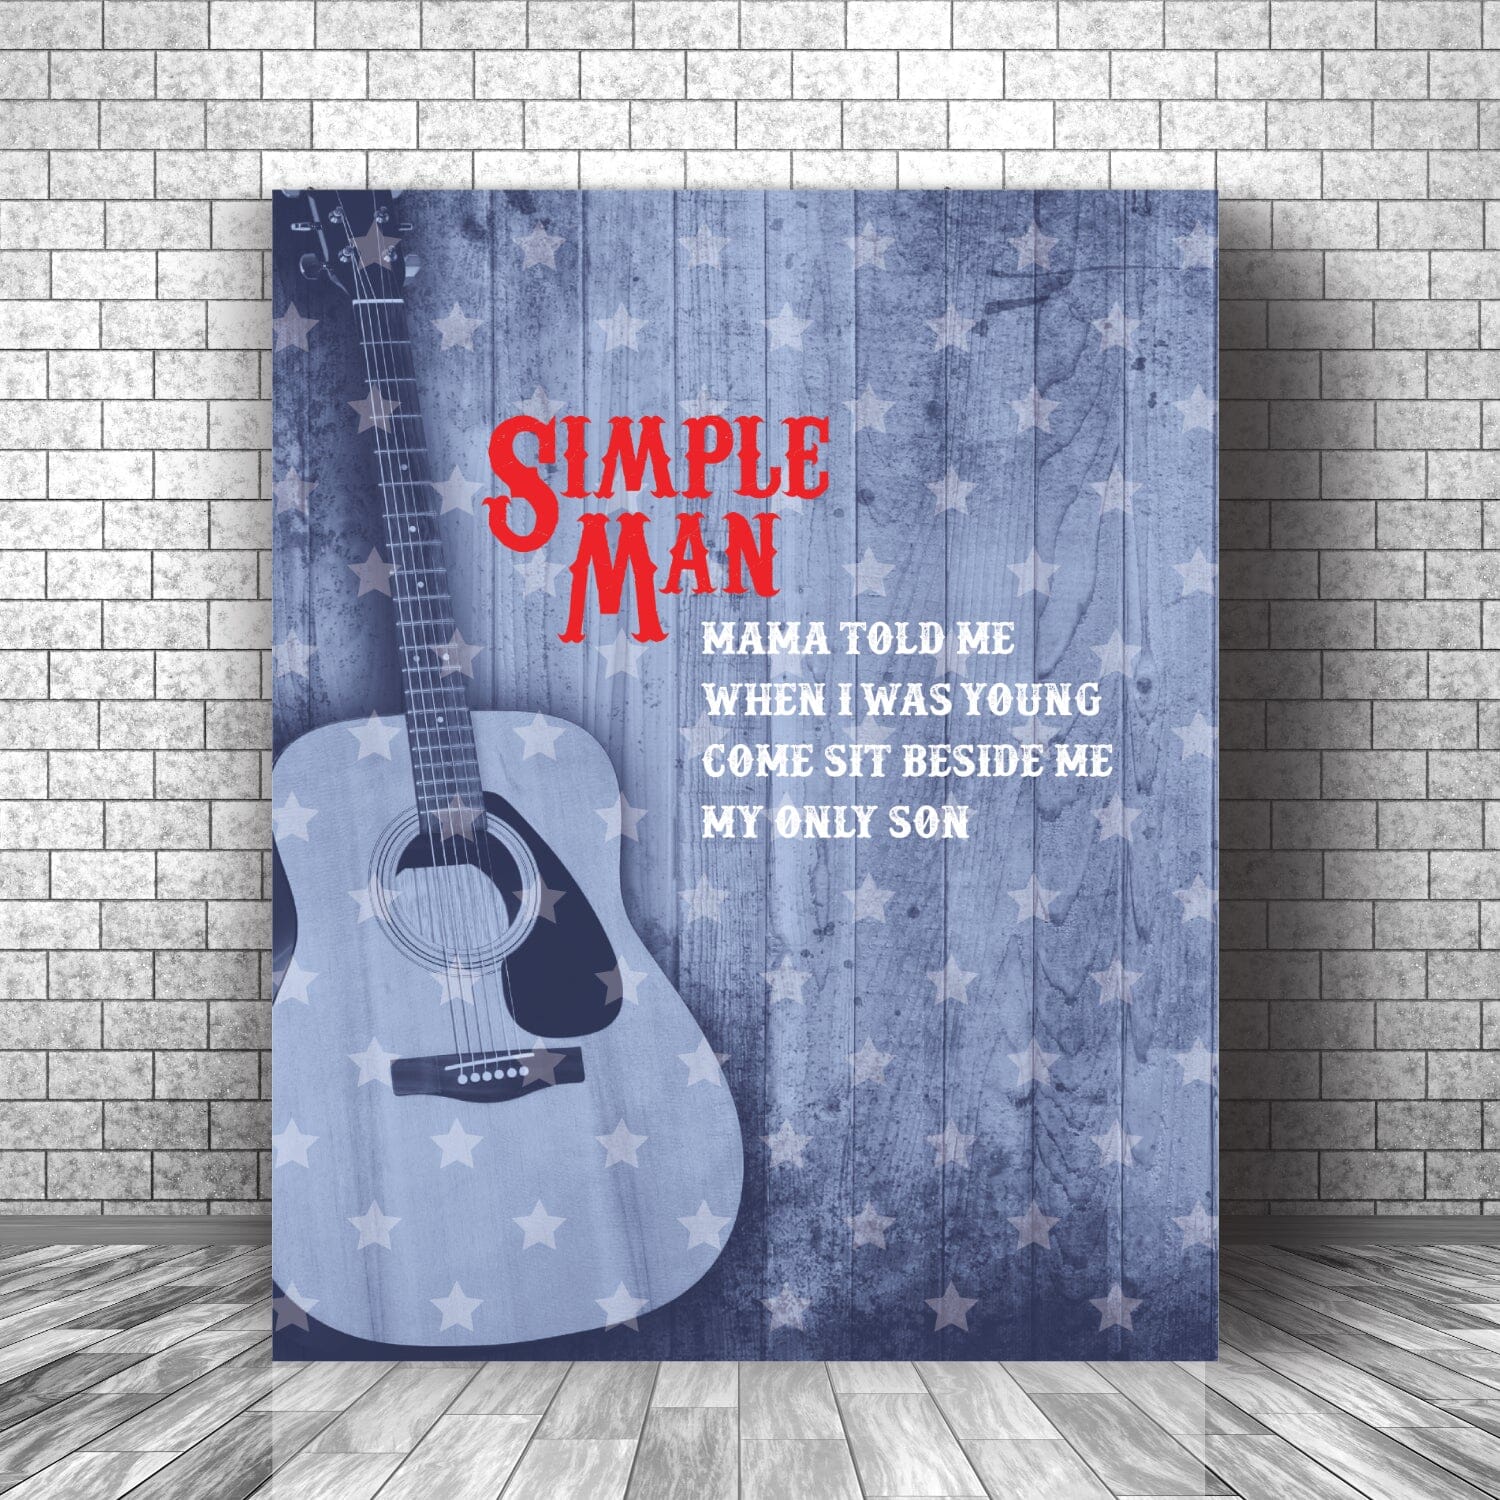 Simple Man by Lynyrd Skynyrd - Lyrical Graphic Song Print Song Lyrics Art Song Lyrics Art 16x20 Canvas Wrap 